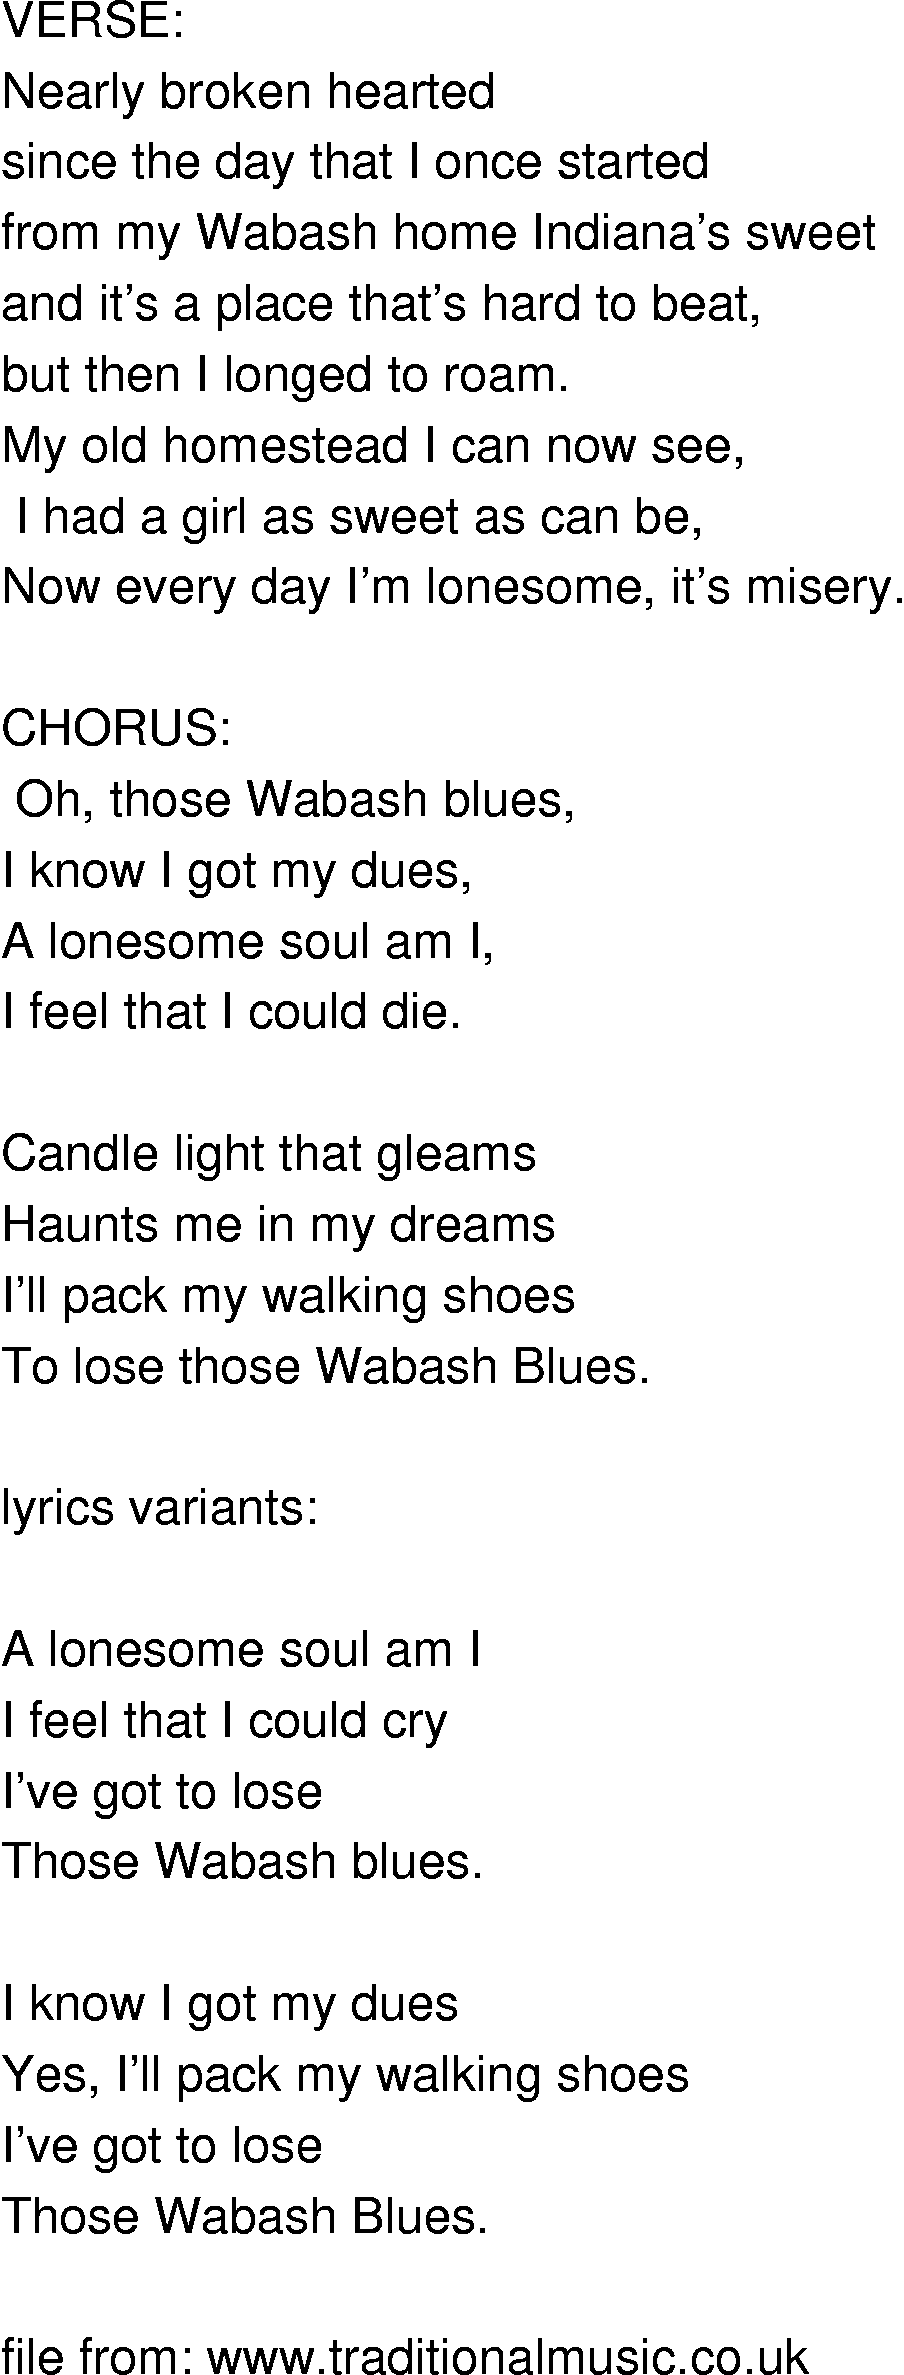 Old-Time (oldtimey) Song Lyrics - wabash blues